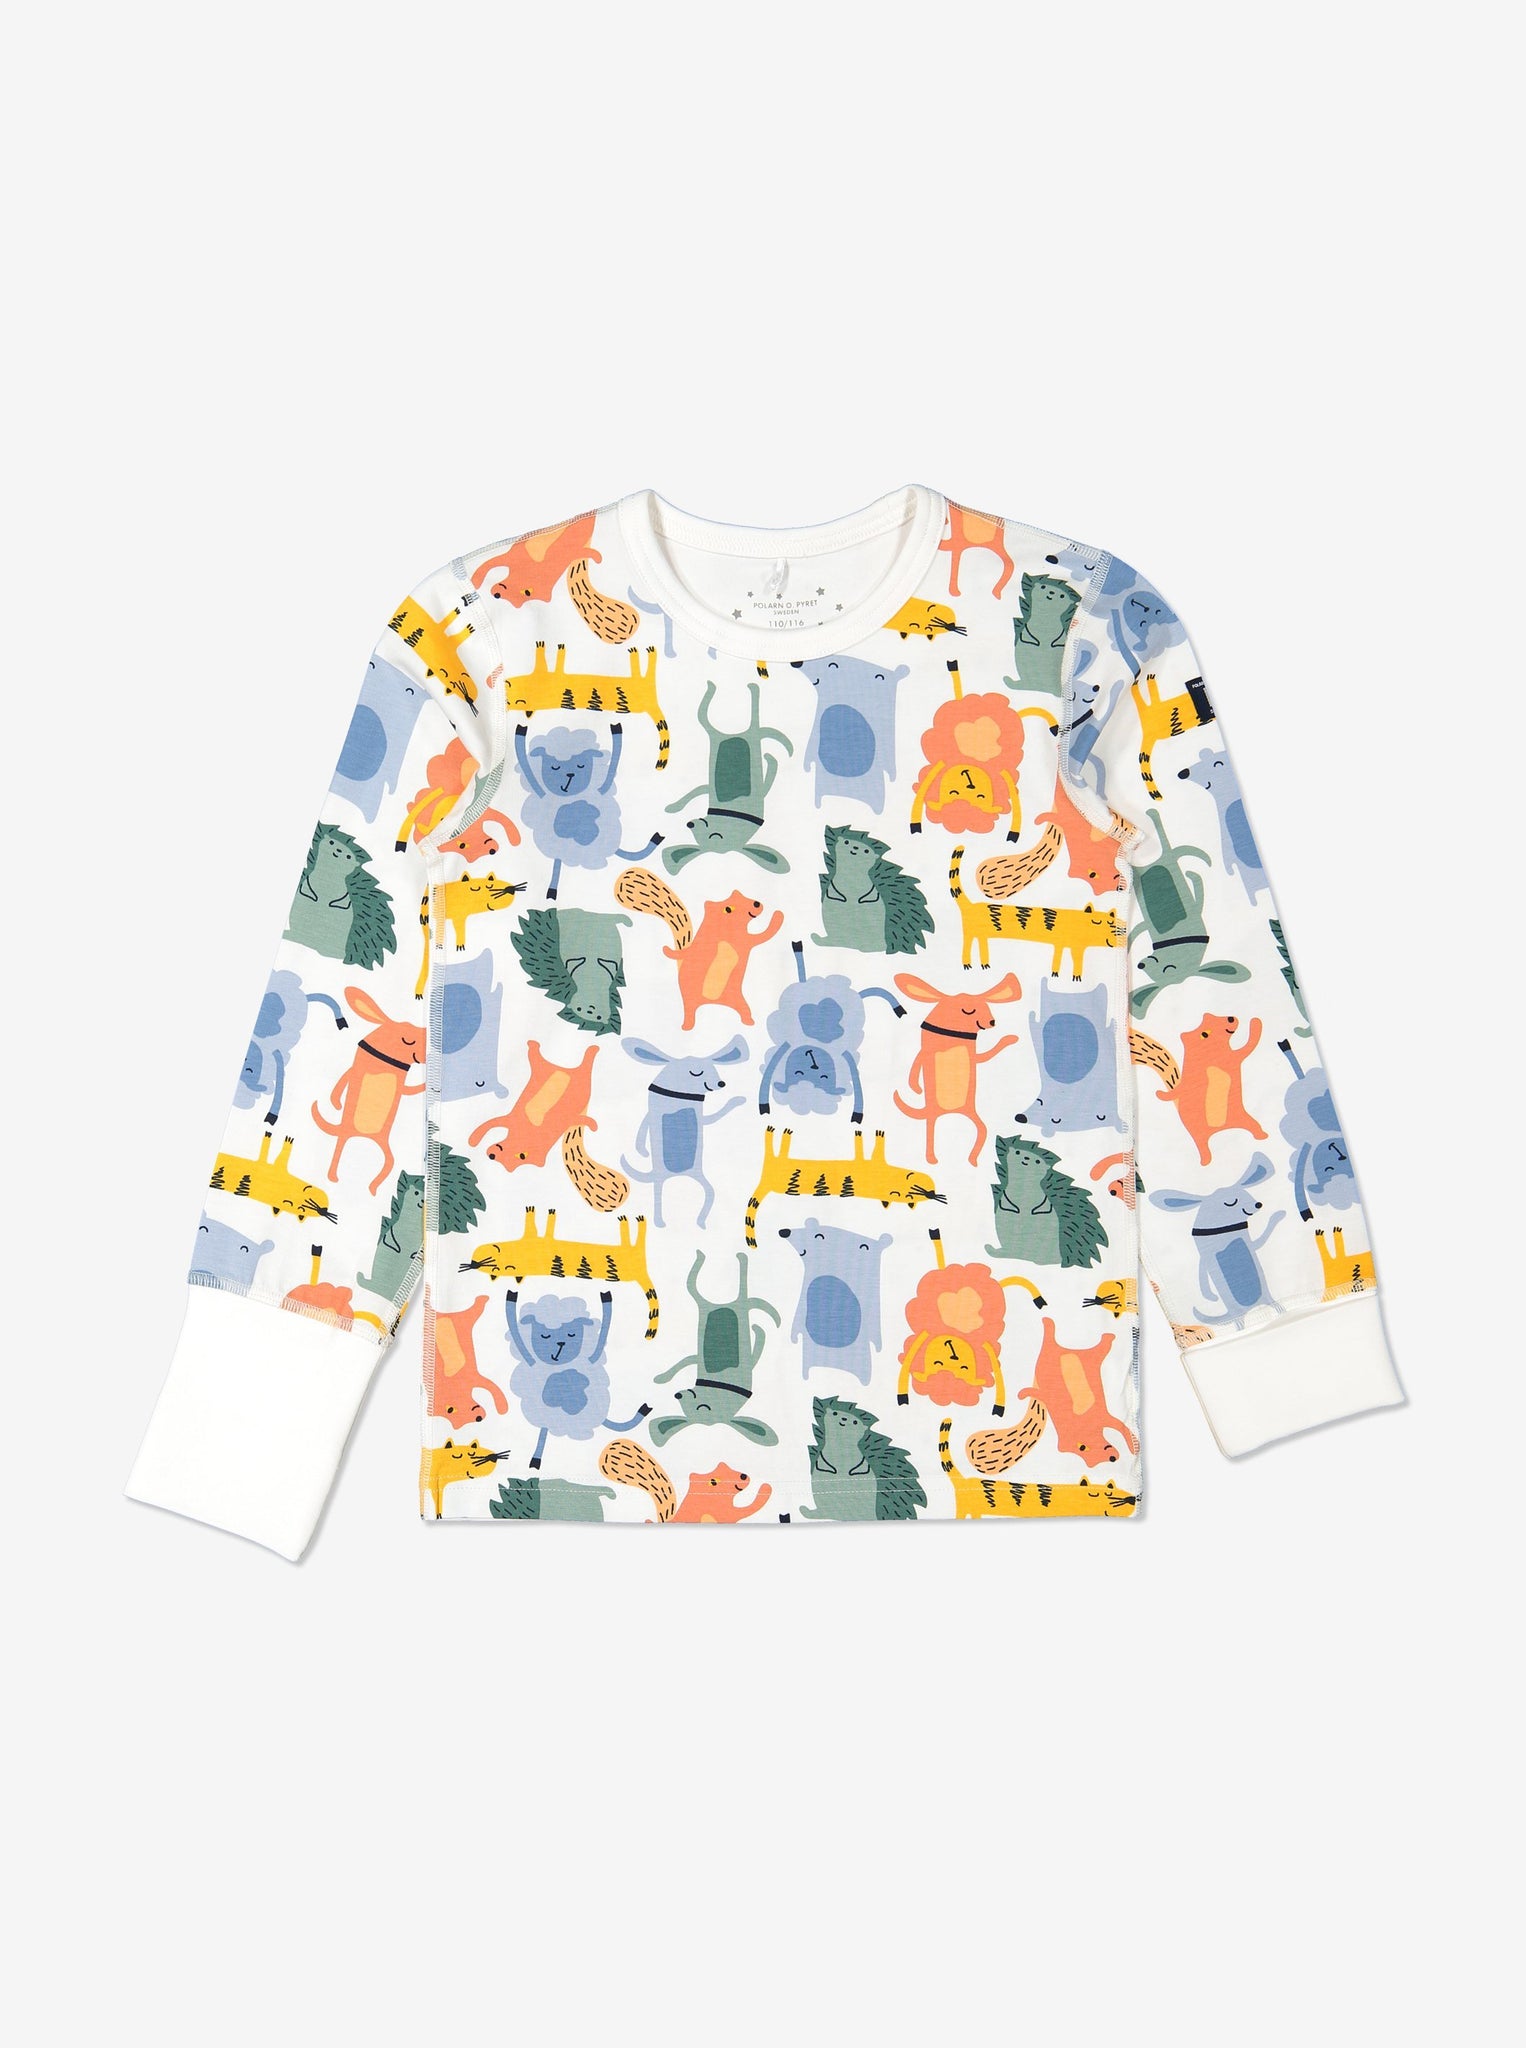 Unisex Kids Organic Cotton White Animal Print Pyjamas